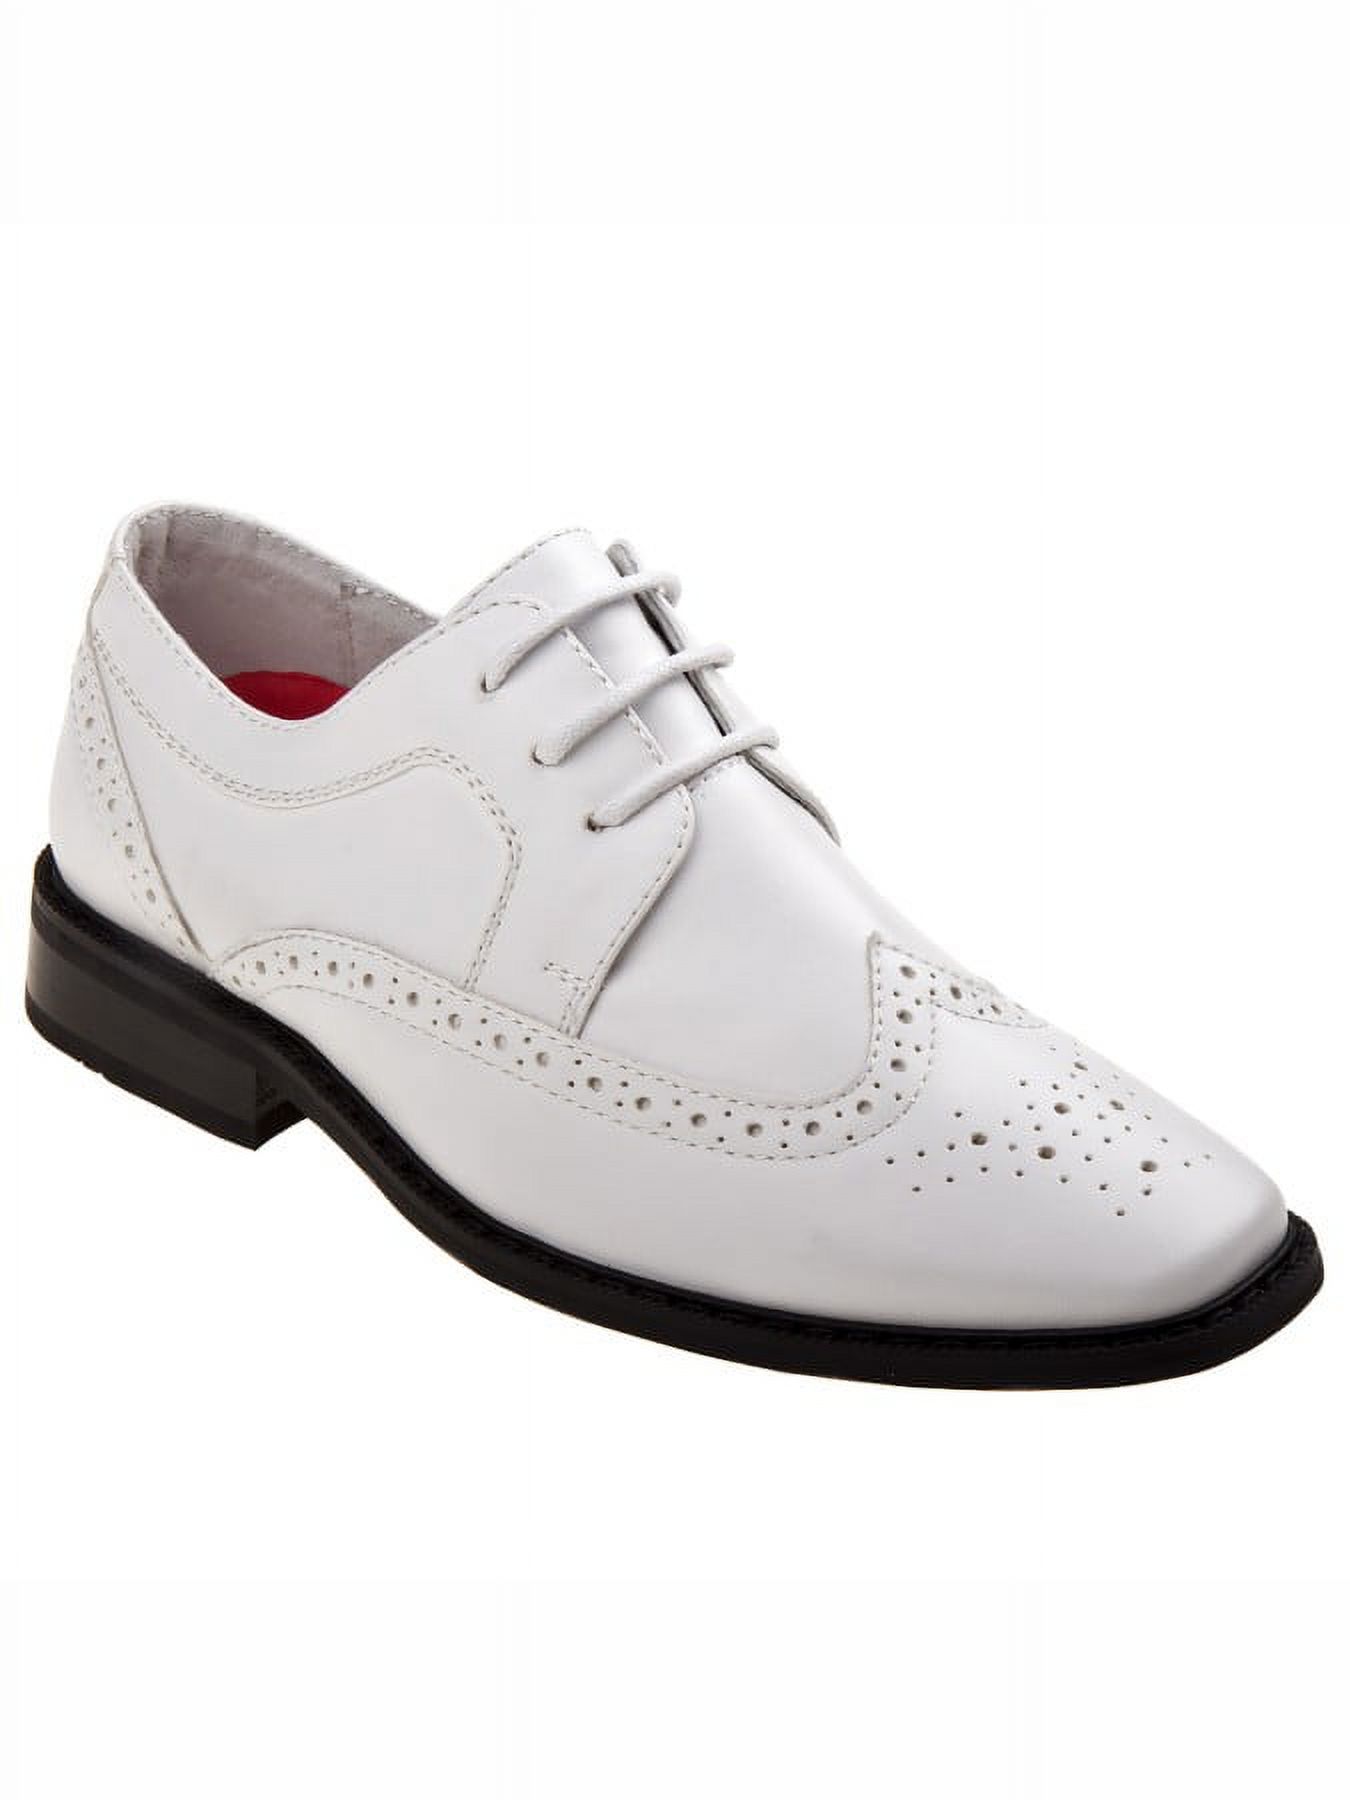 Joseph Allen Boys Lace Child Dress Shoes - White, 13 - image 1 of 5